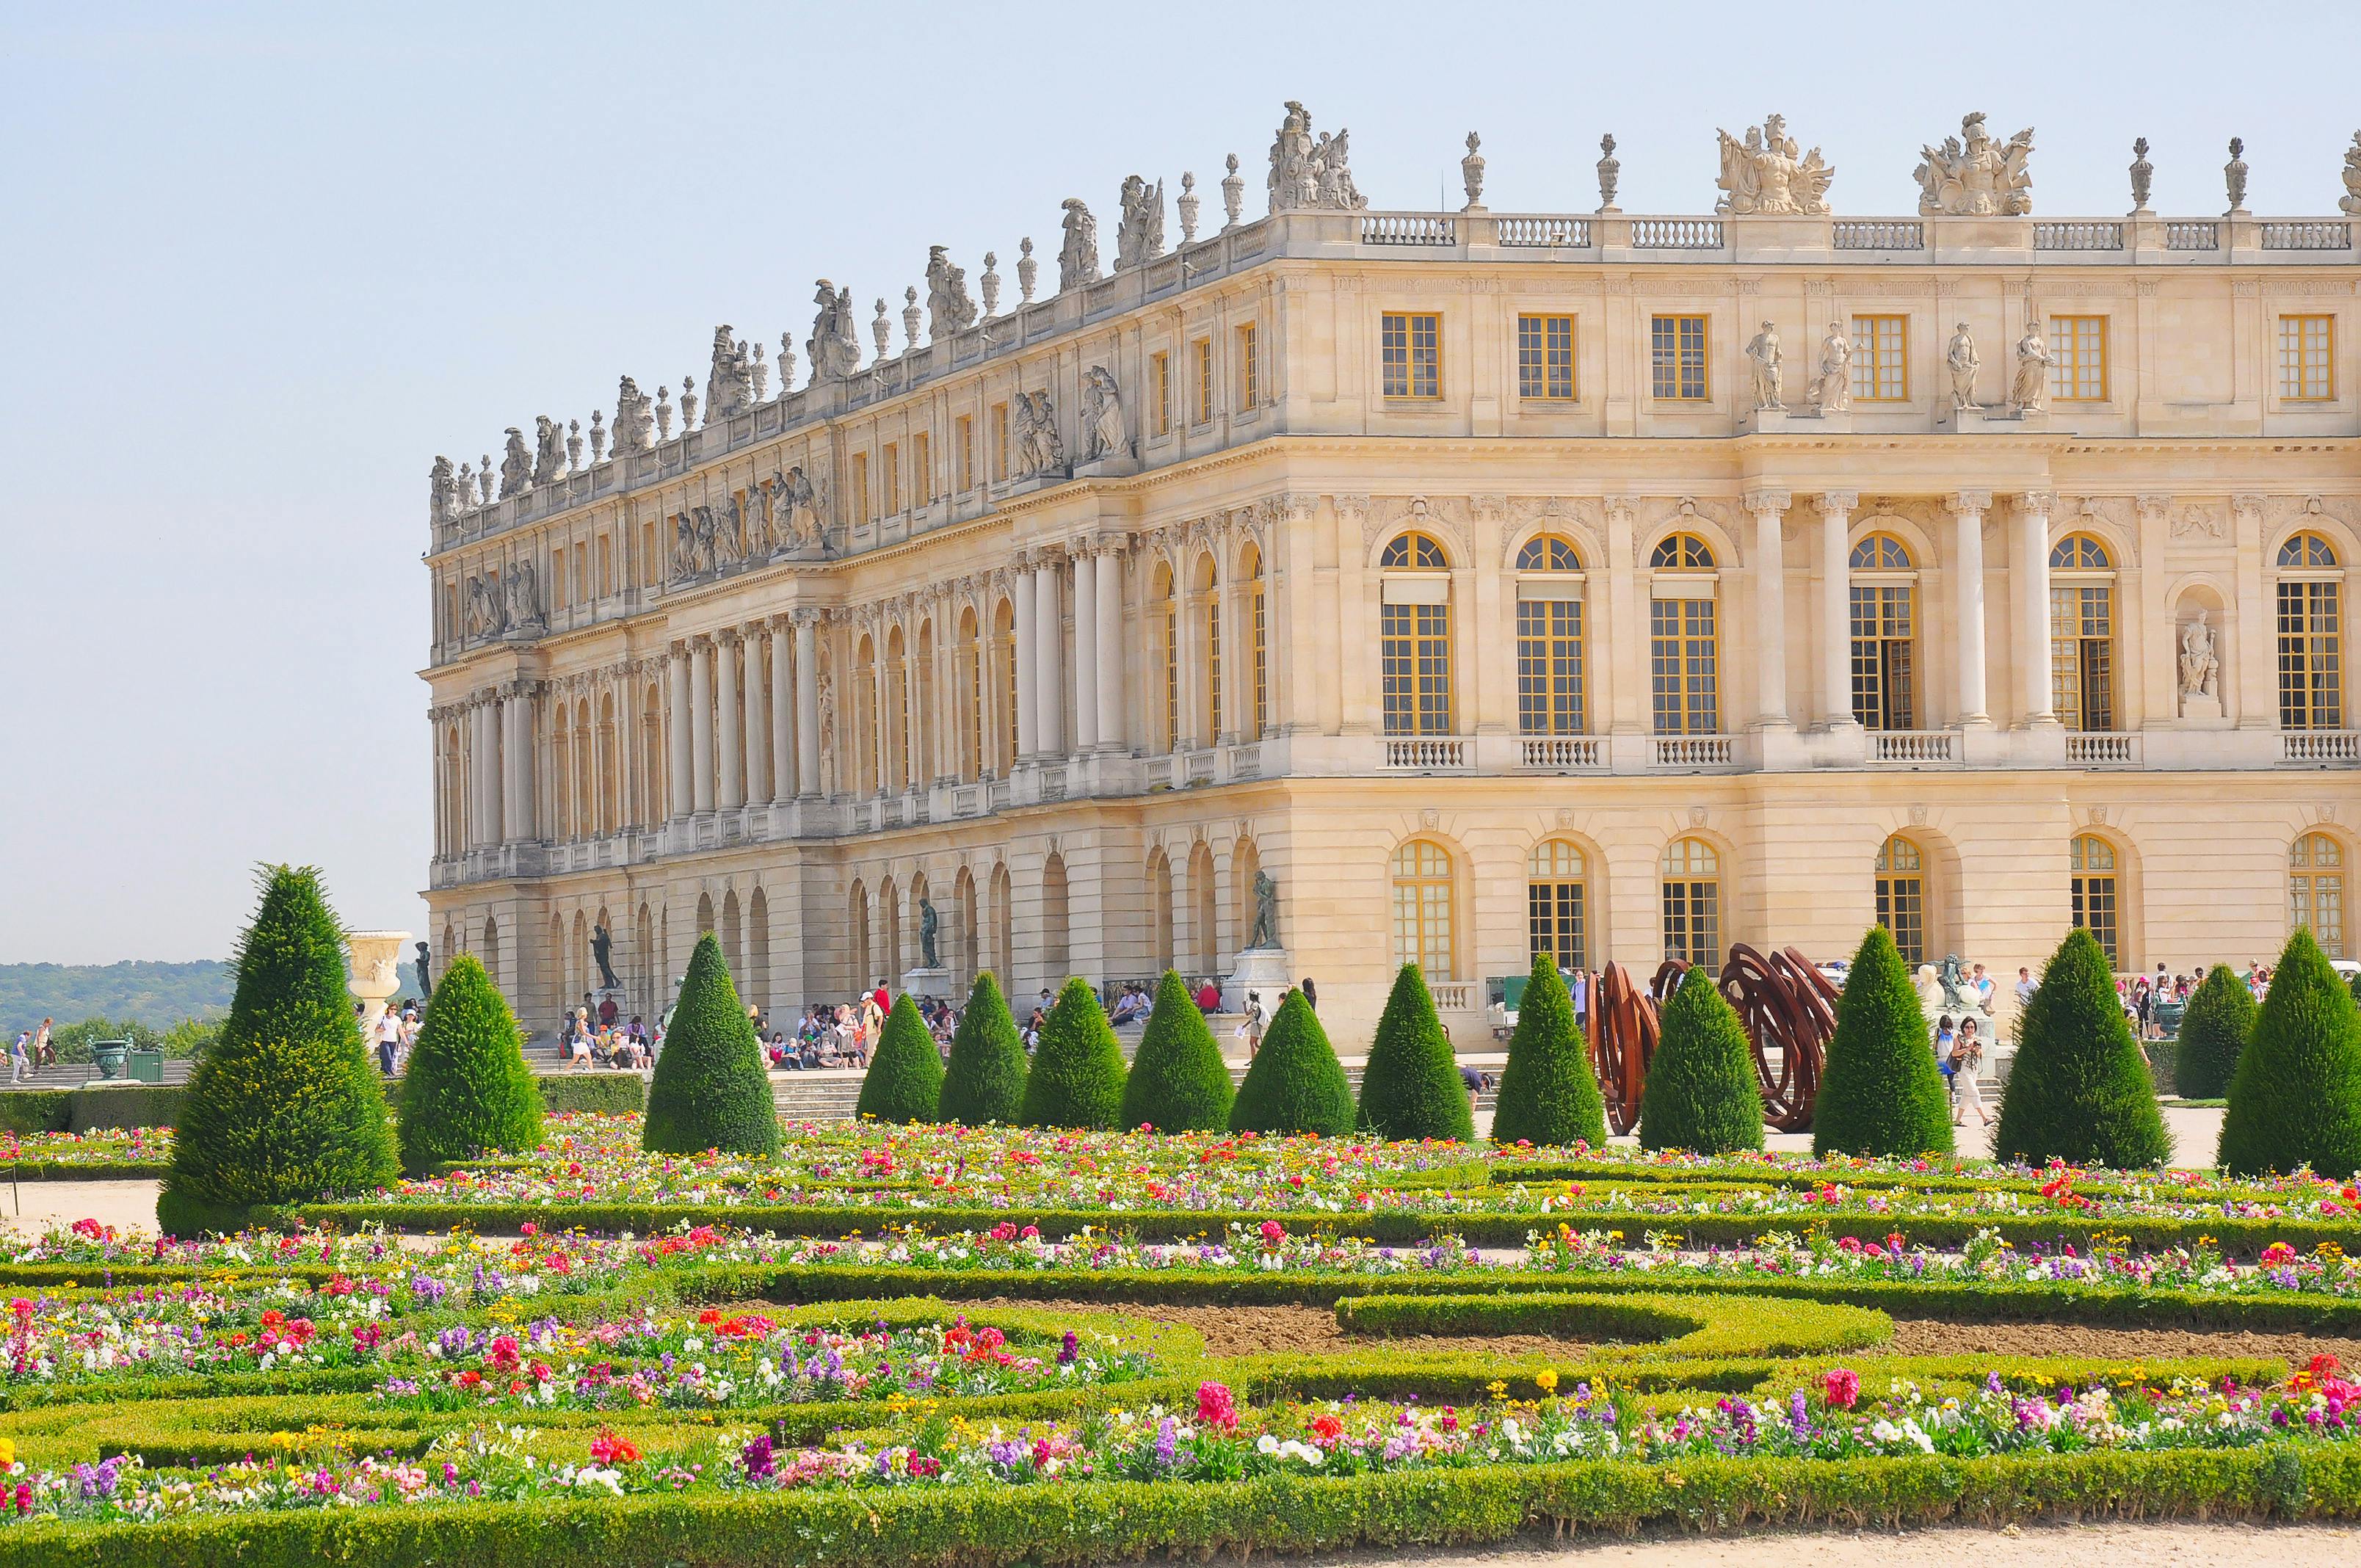 Rondleiding door het paleis van Versailles en door Giverny inclusief vervoer en lunch